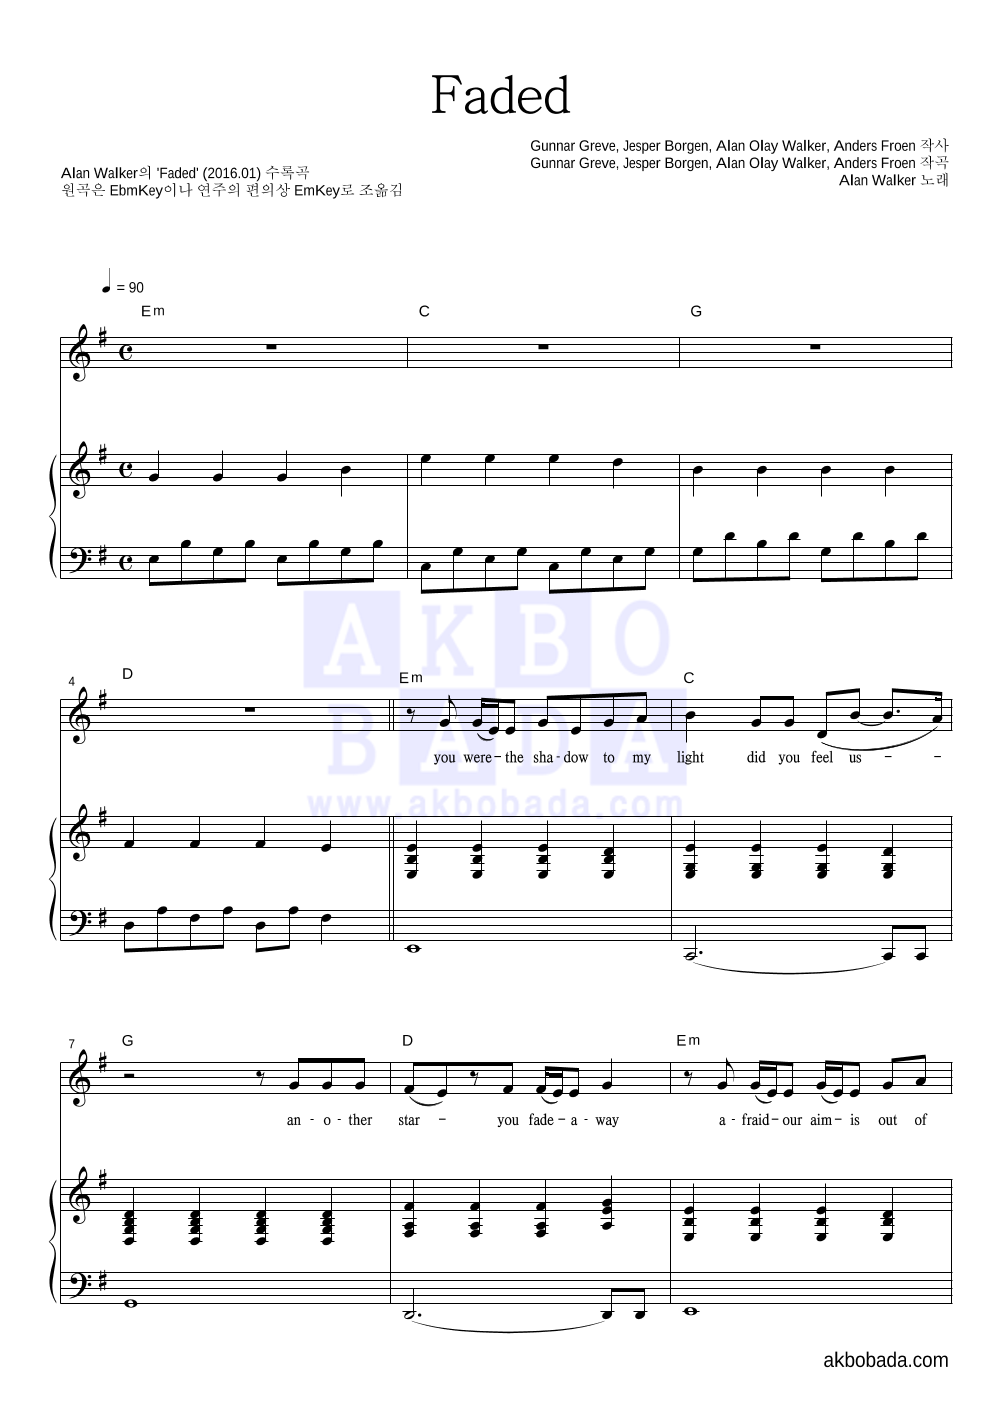 Alan Walker - Faded 피아노 3단 악보 